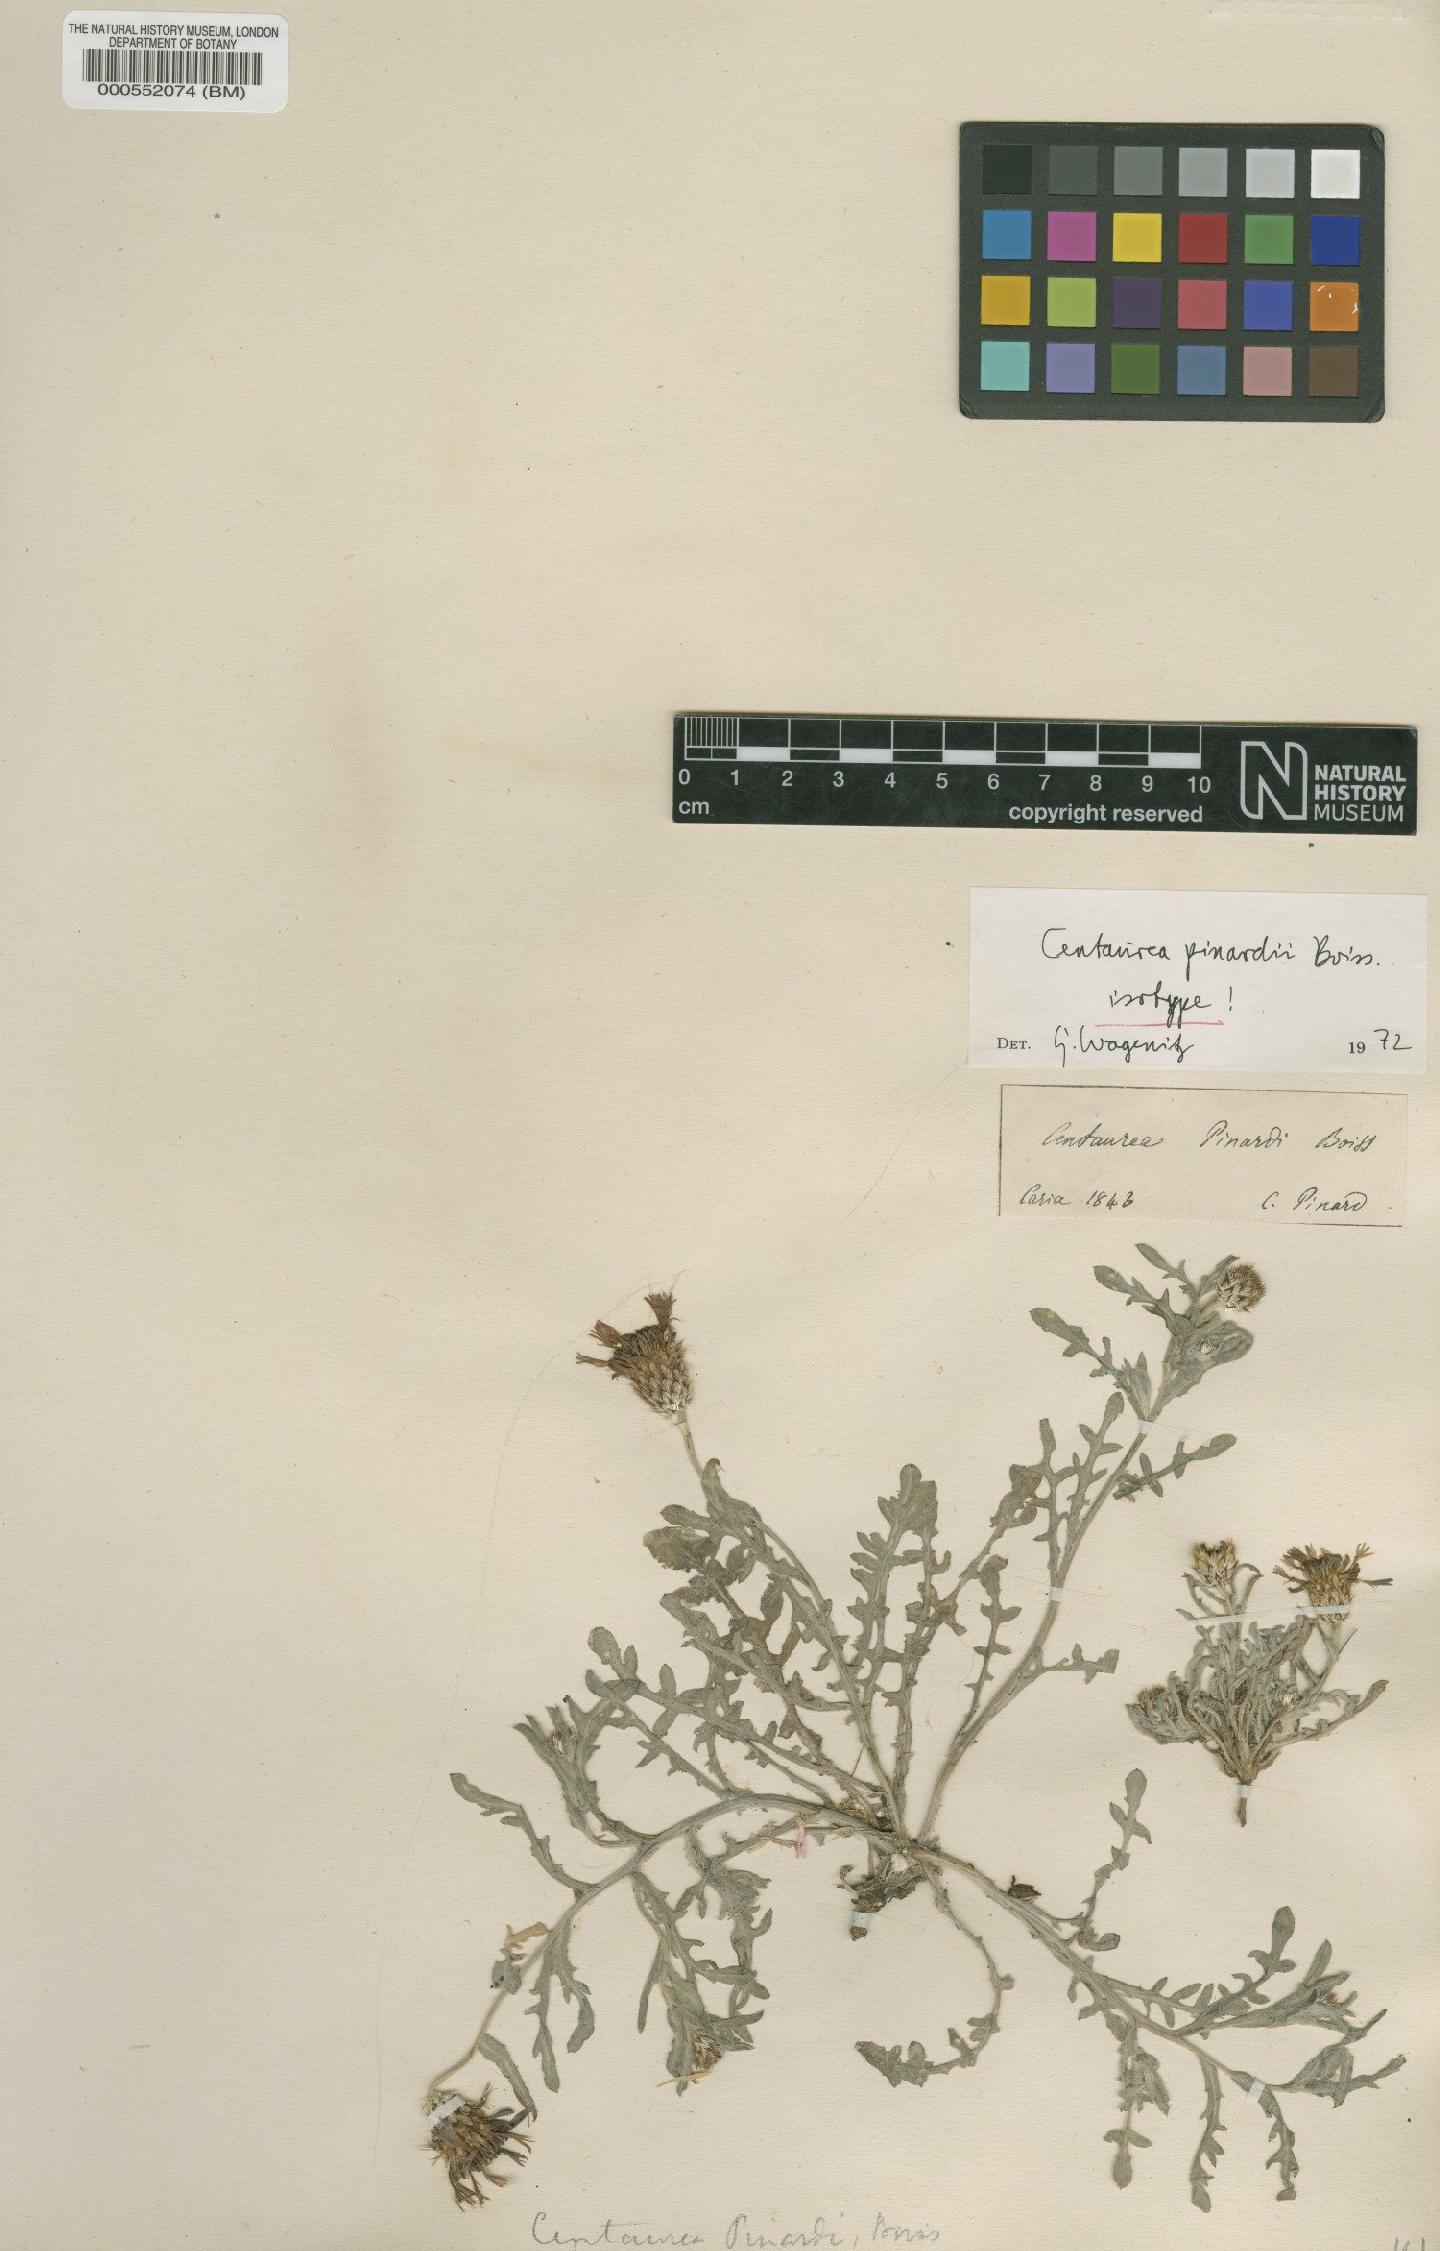 To NHMUK collection (Centaurea pinardi Boiss.; Isotype; NHMUK:ecatalogue:4680944)